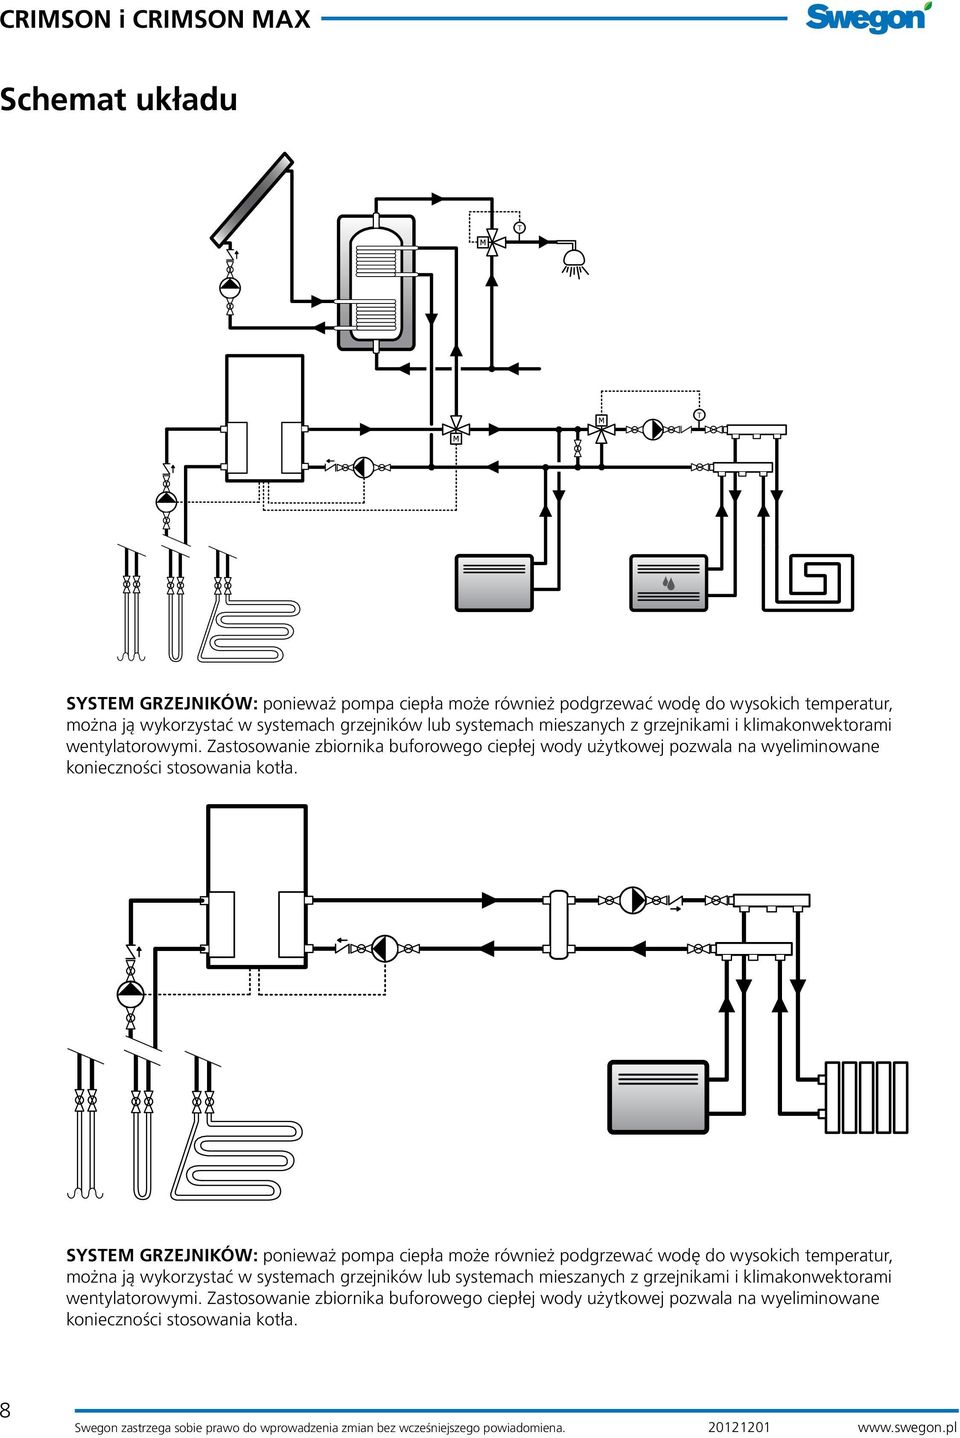 Zastosowanie zbiornika buforowego ciepłej wody użytkowej pozwala na wyeliminowane konieczności stosowania kotła.